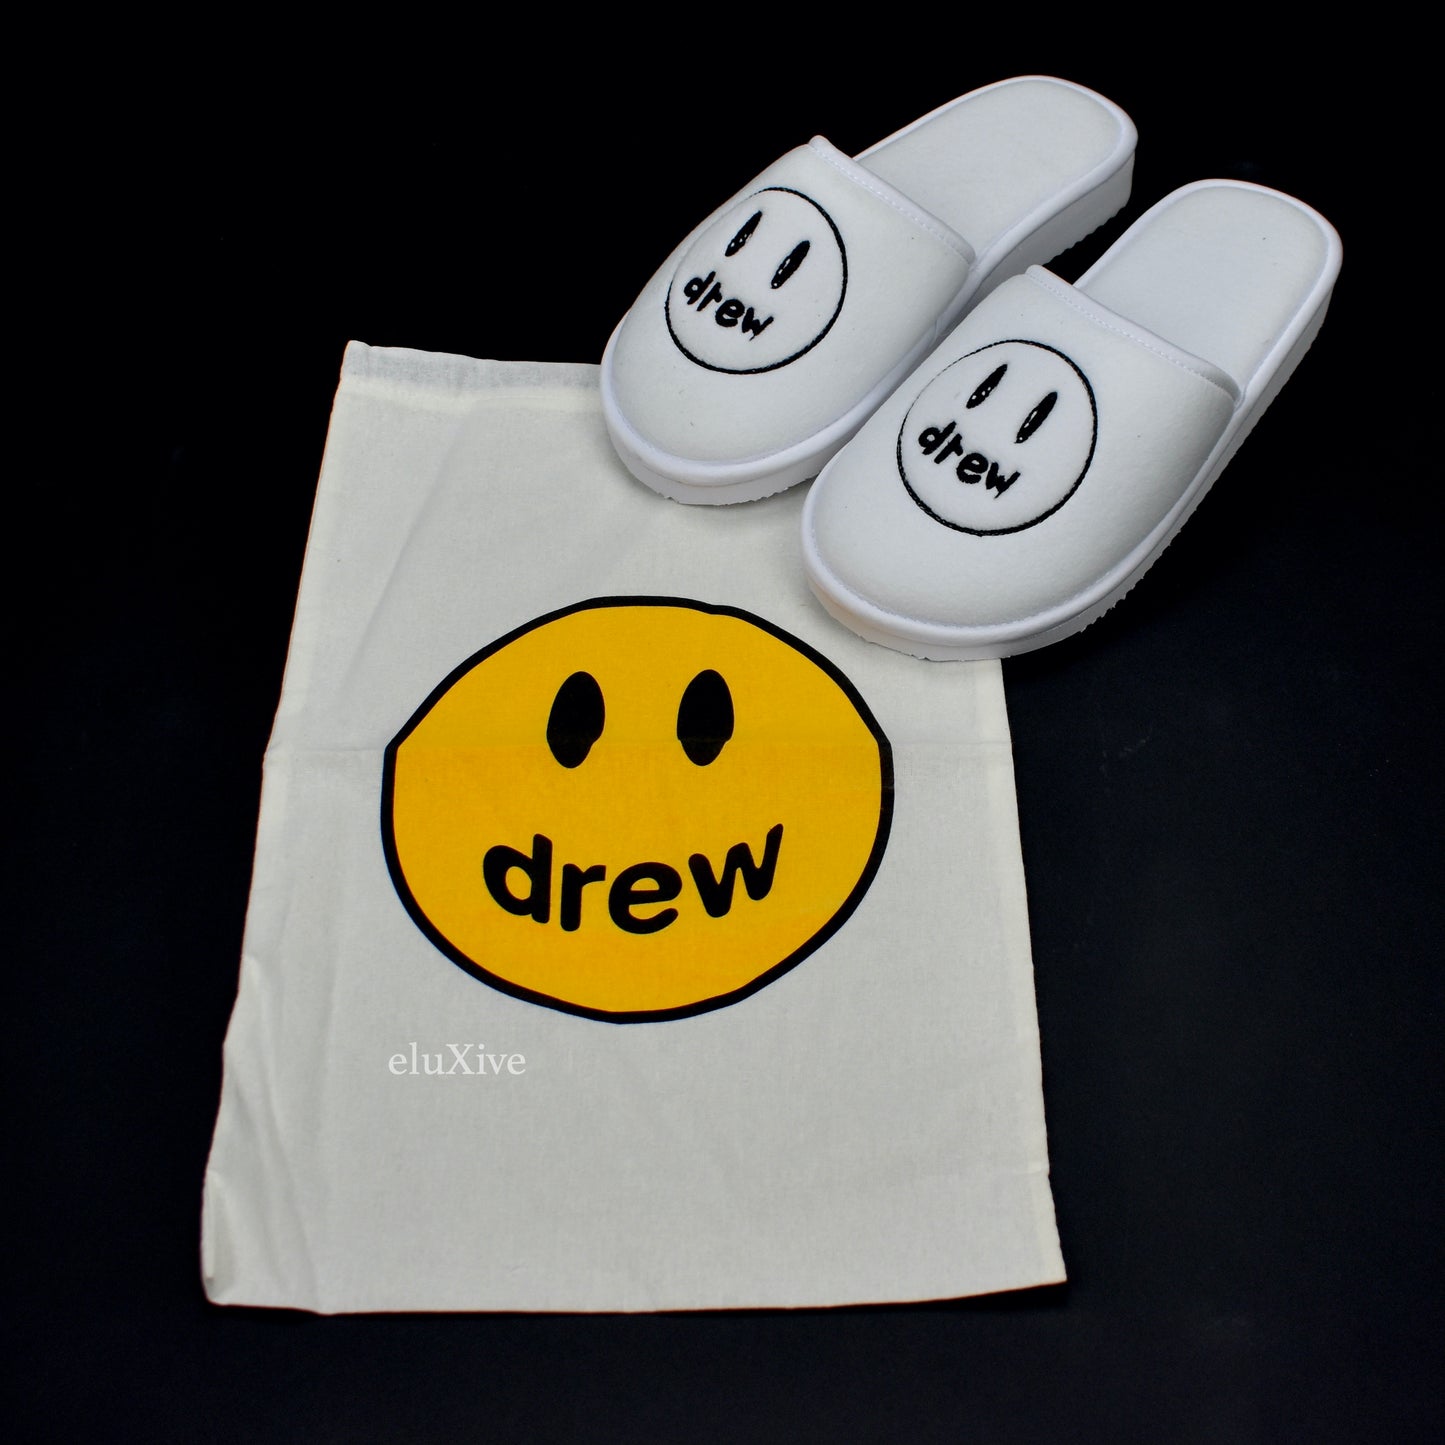 Drew House - White Smiley Face Logo Slippers